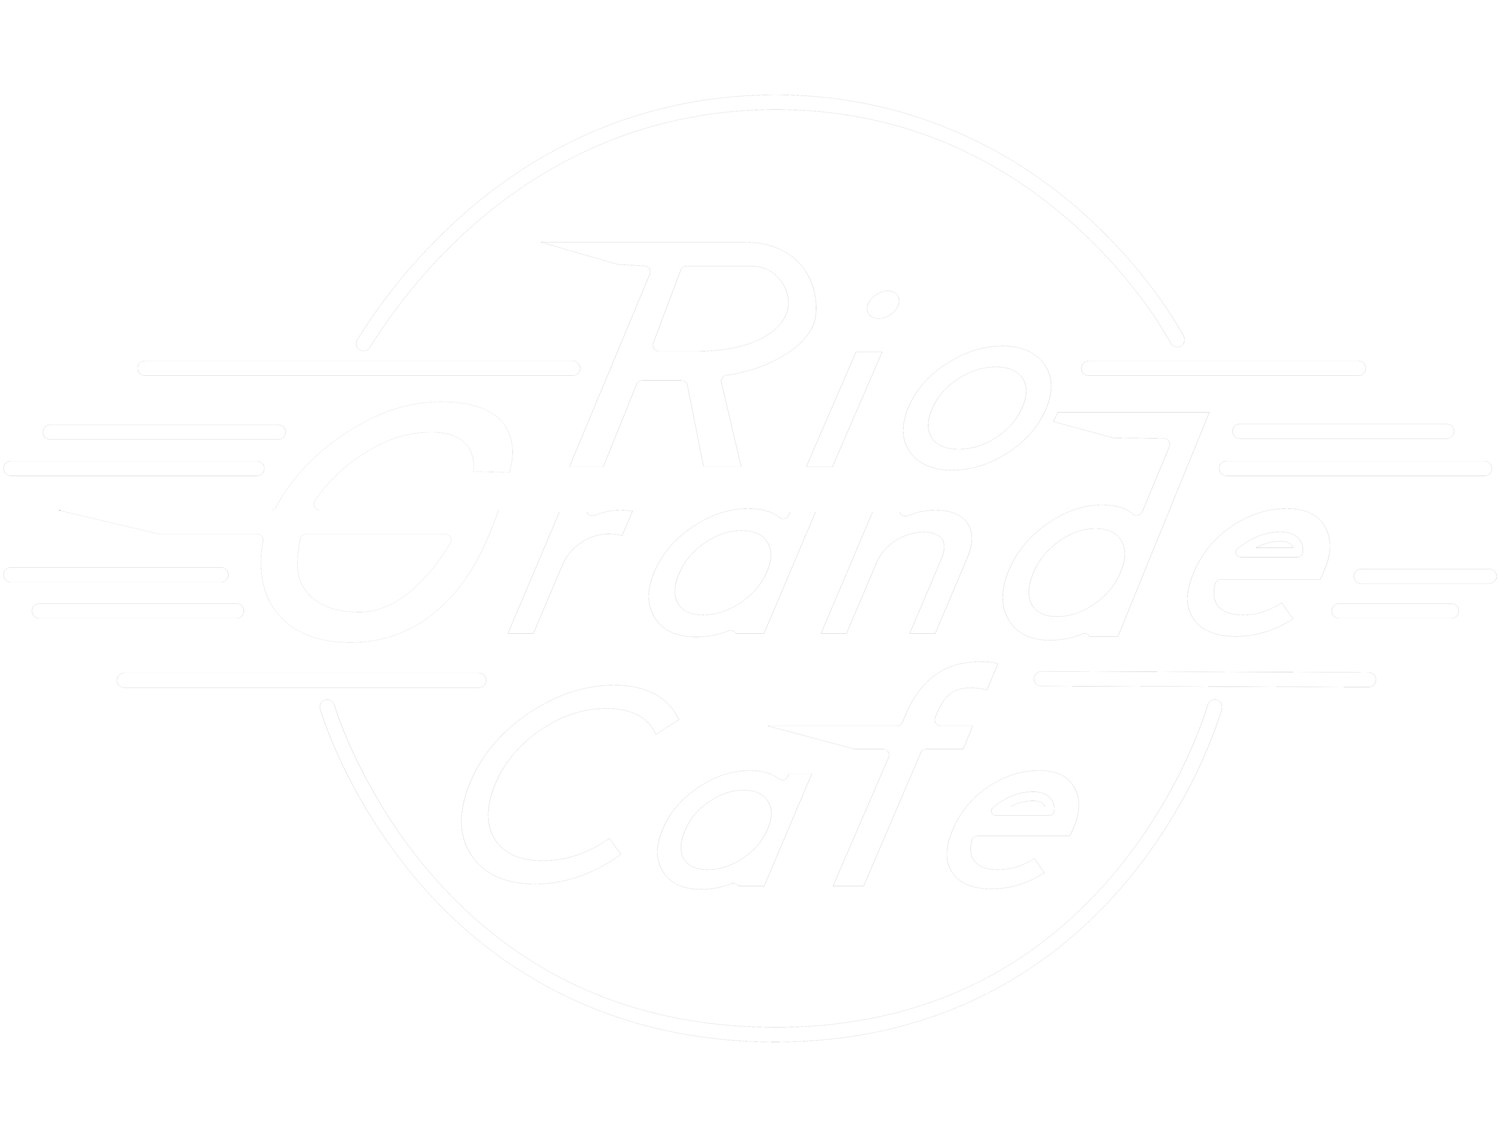 Rio Grande Cafe Mexican Food